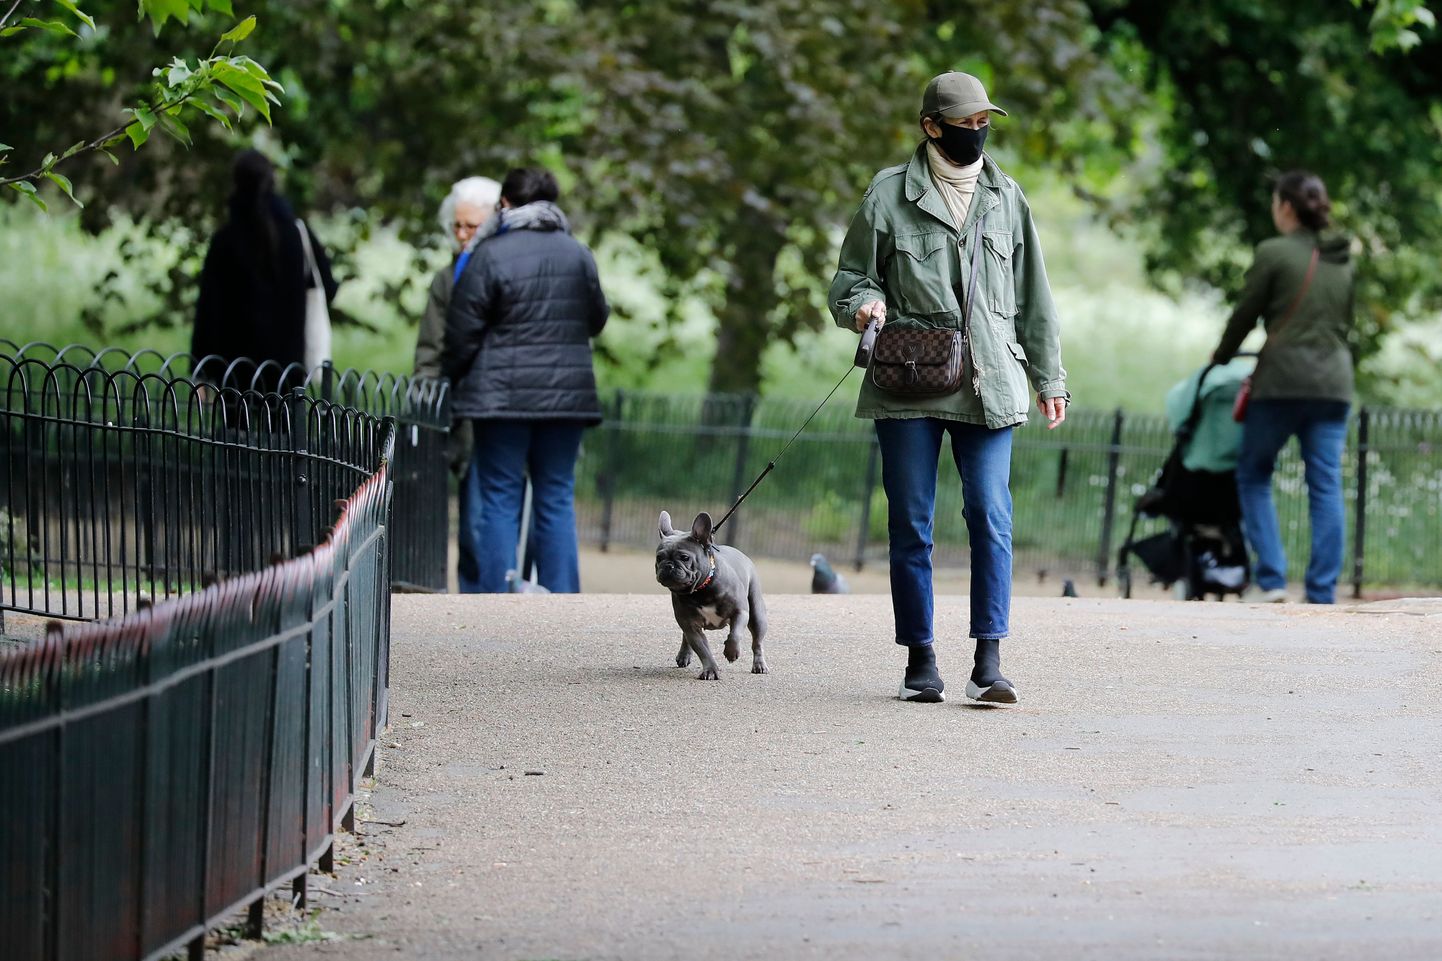 Sieviete staidzina suni parkā Londonā. Ilustratīvs attēls